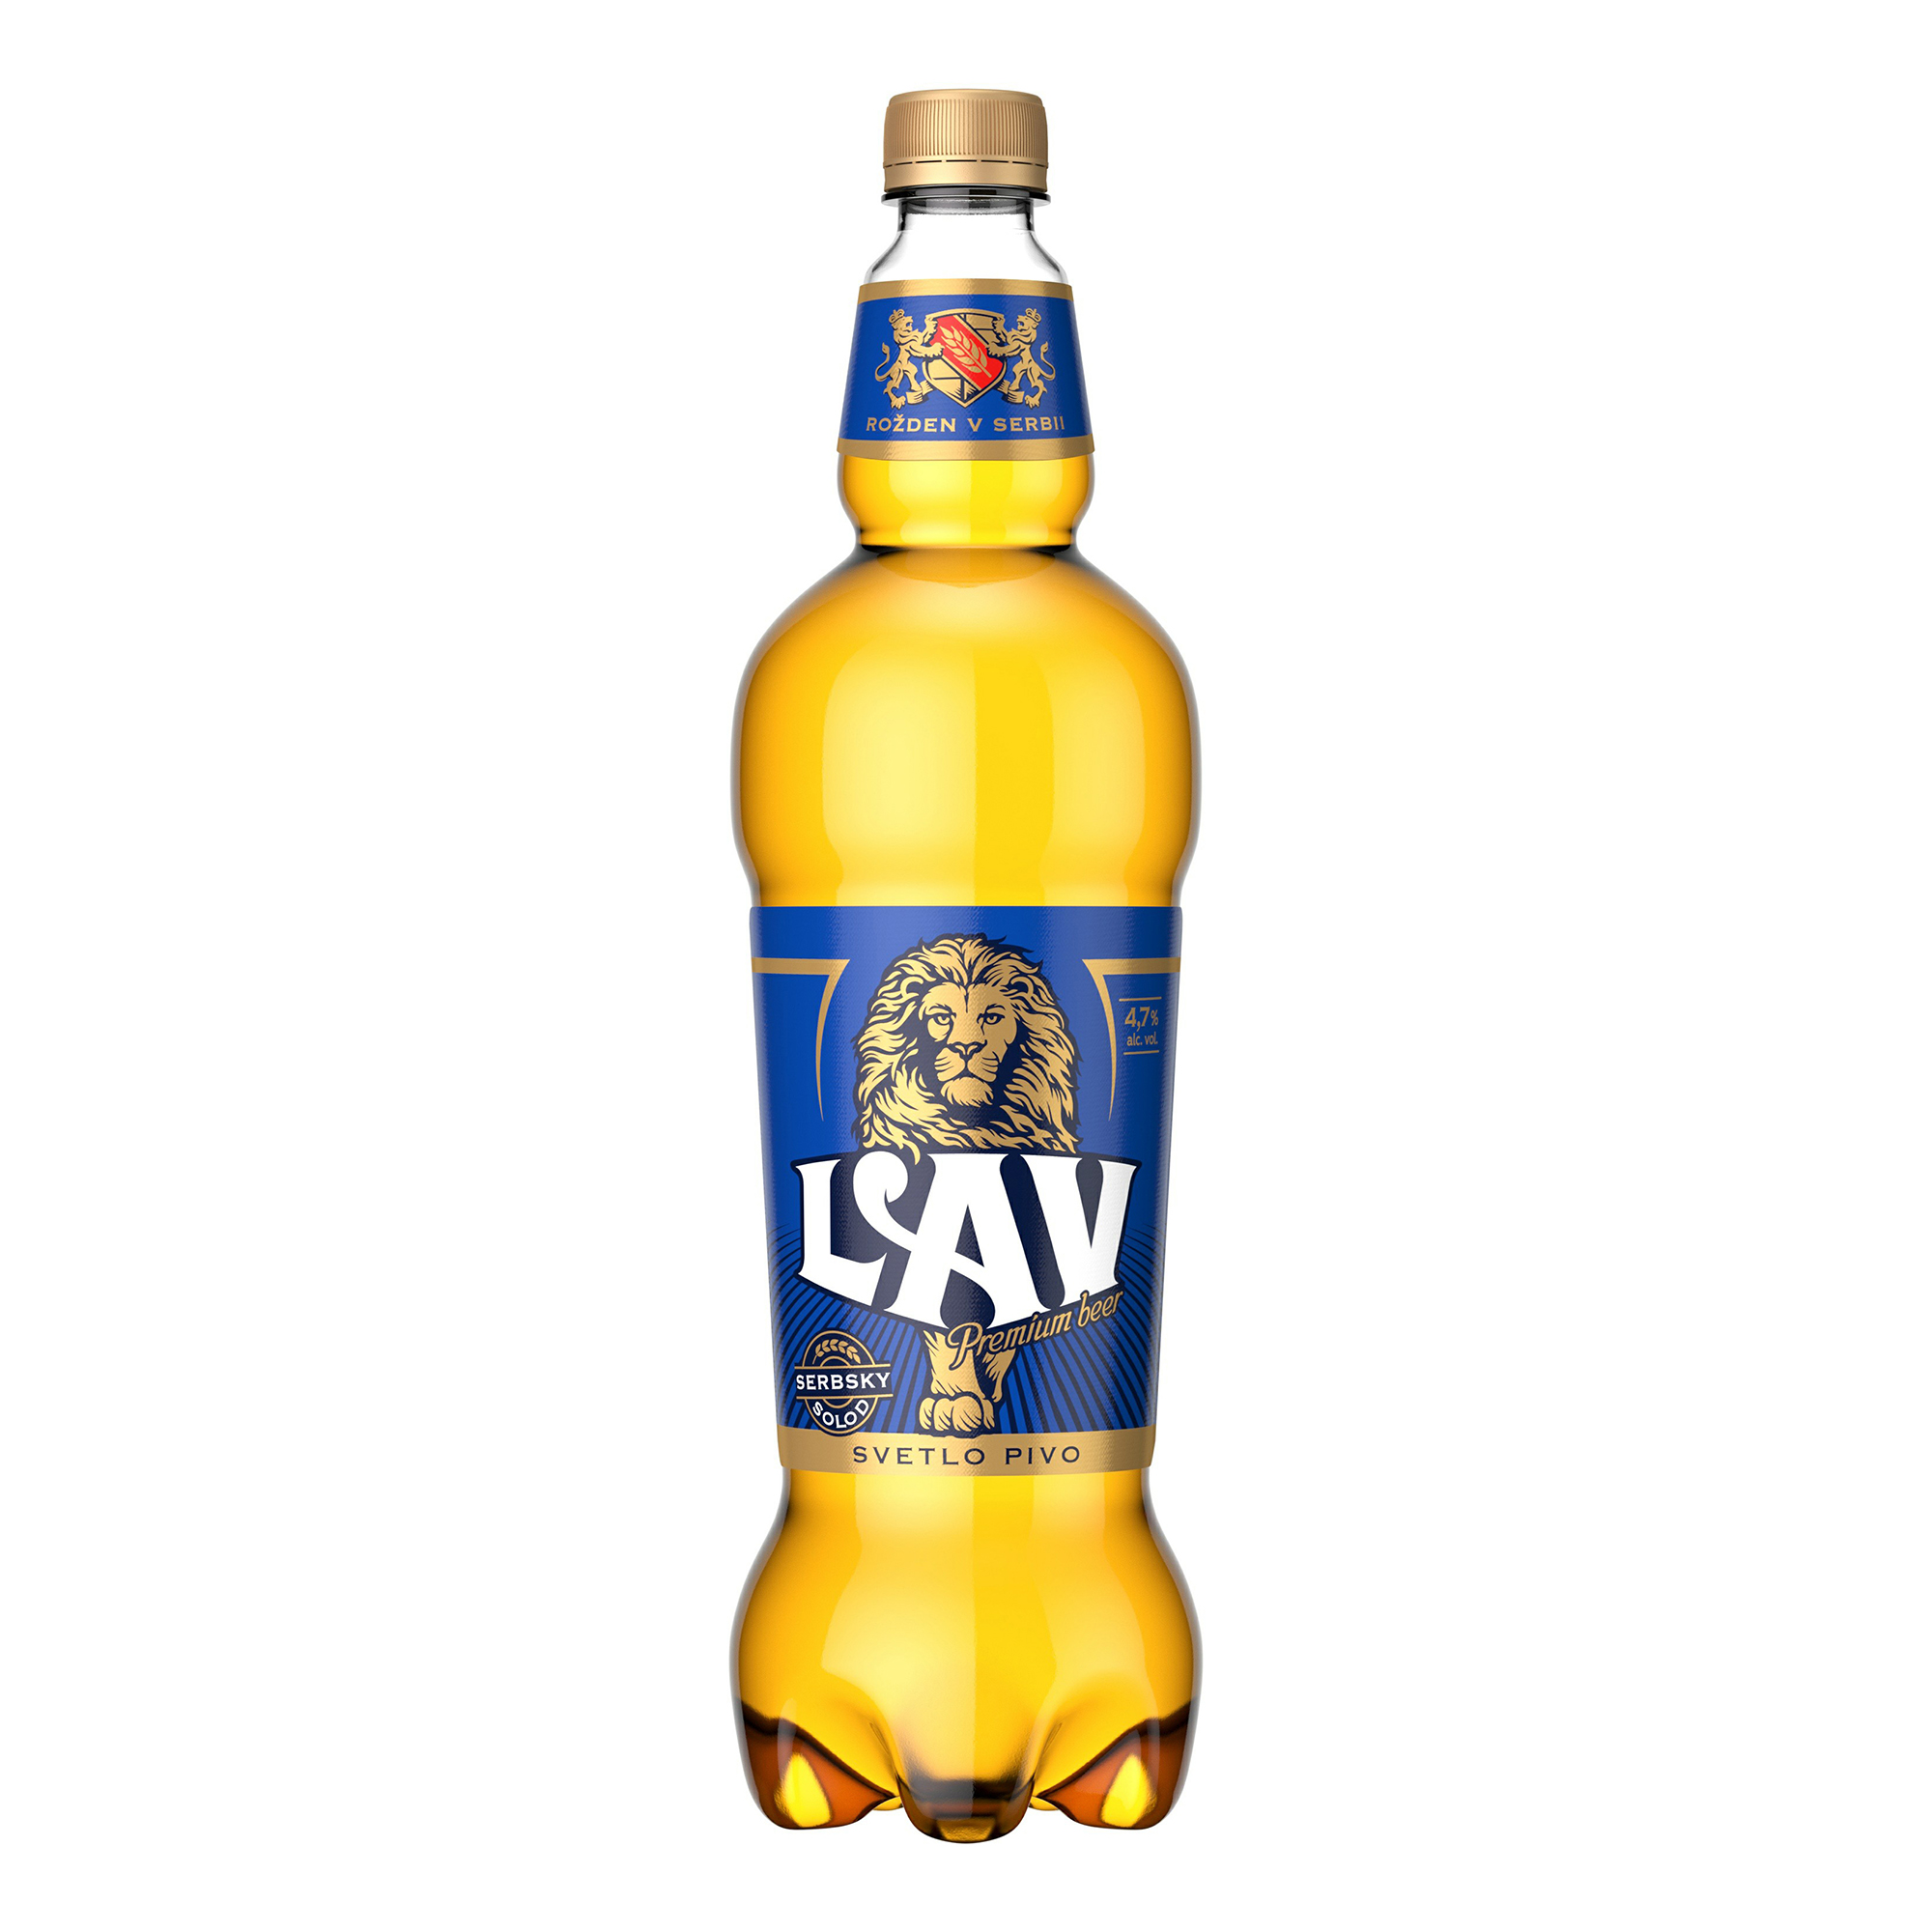 Пиво Lav Premium светлое фильтрованное пастеризованное 4,7% 1,25 л - купить в Москве, цены на Мегамаркет | 100060811296